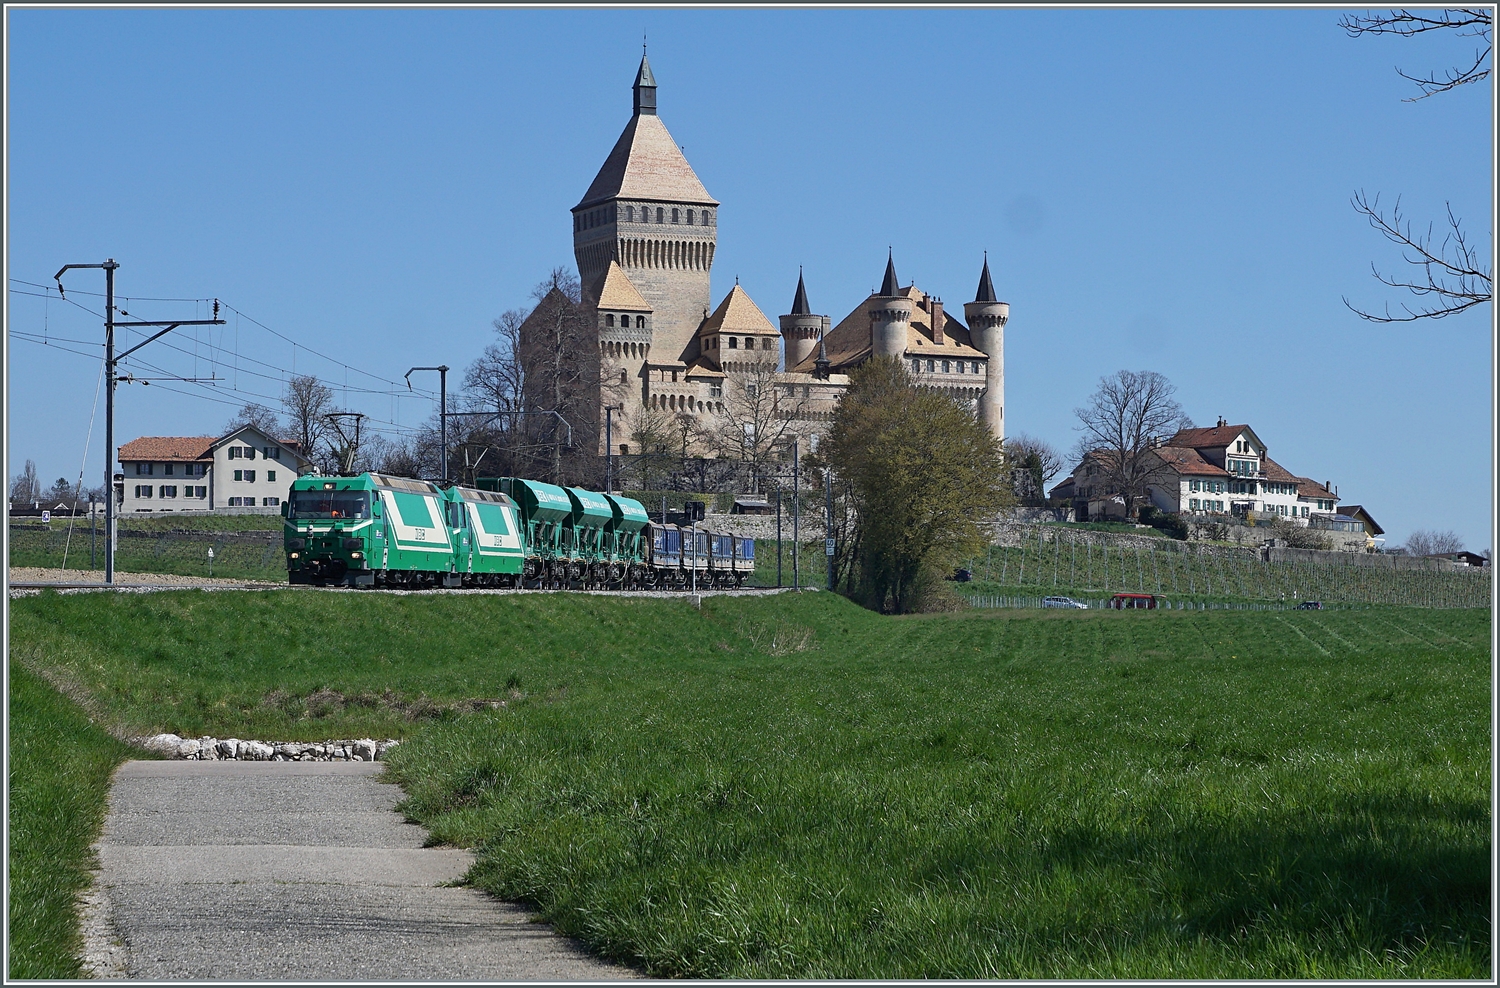 Die beiden BAM MBC Ge 4/4 21 und 22 sind mit ihrem Kieszug Apples - Morges - Gland bei Vufflens le Château unterwegs.

5. April 2023